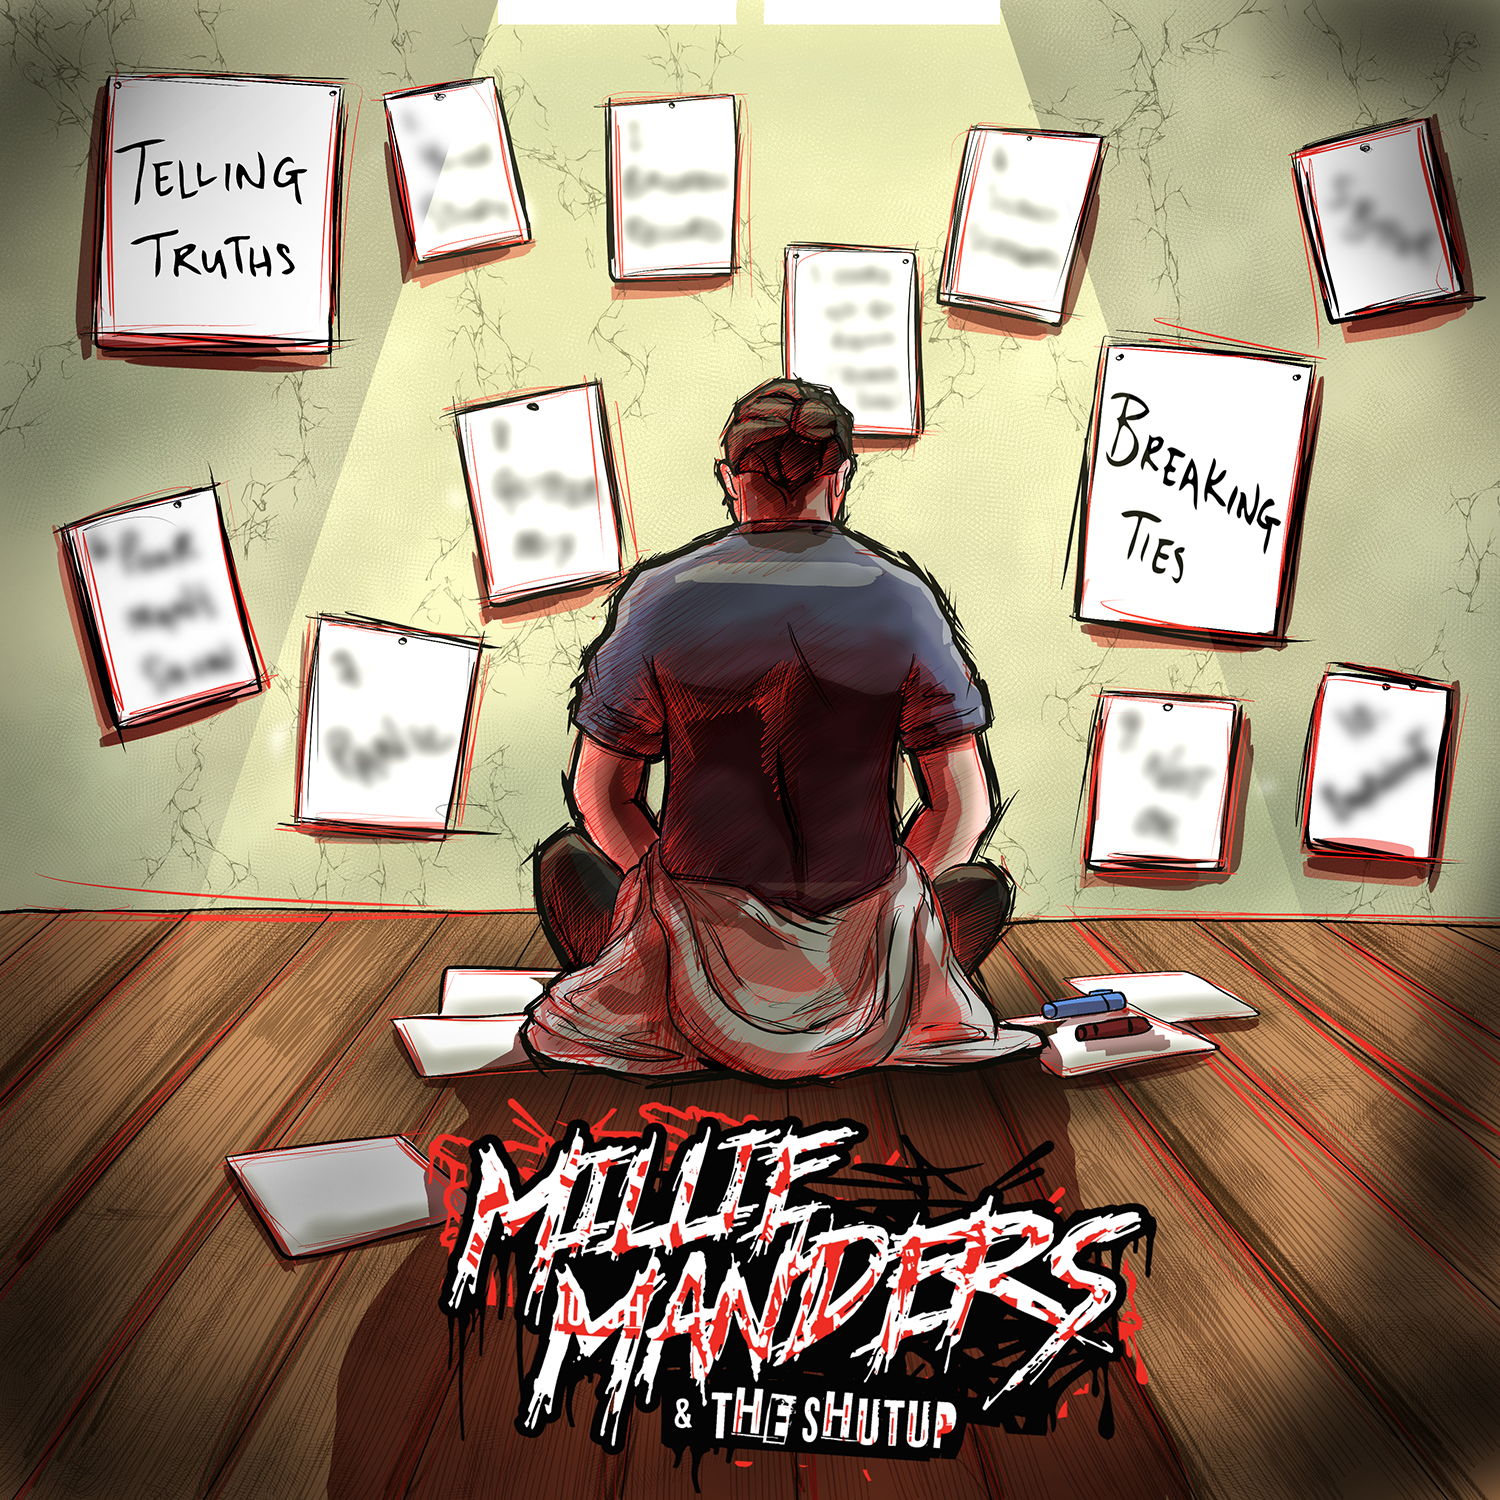 Millie Manders & The Shut Up "Telling Truths, Breaking Ties" Artwork